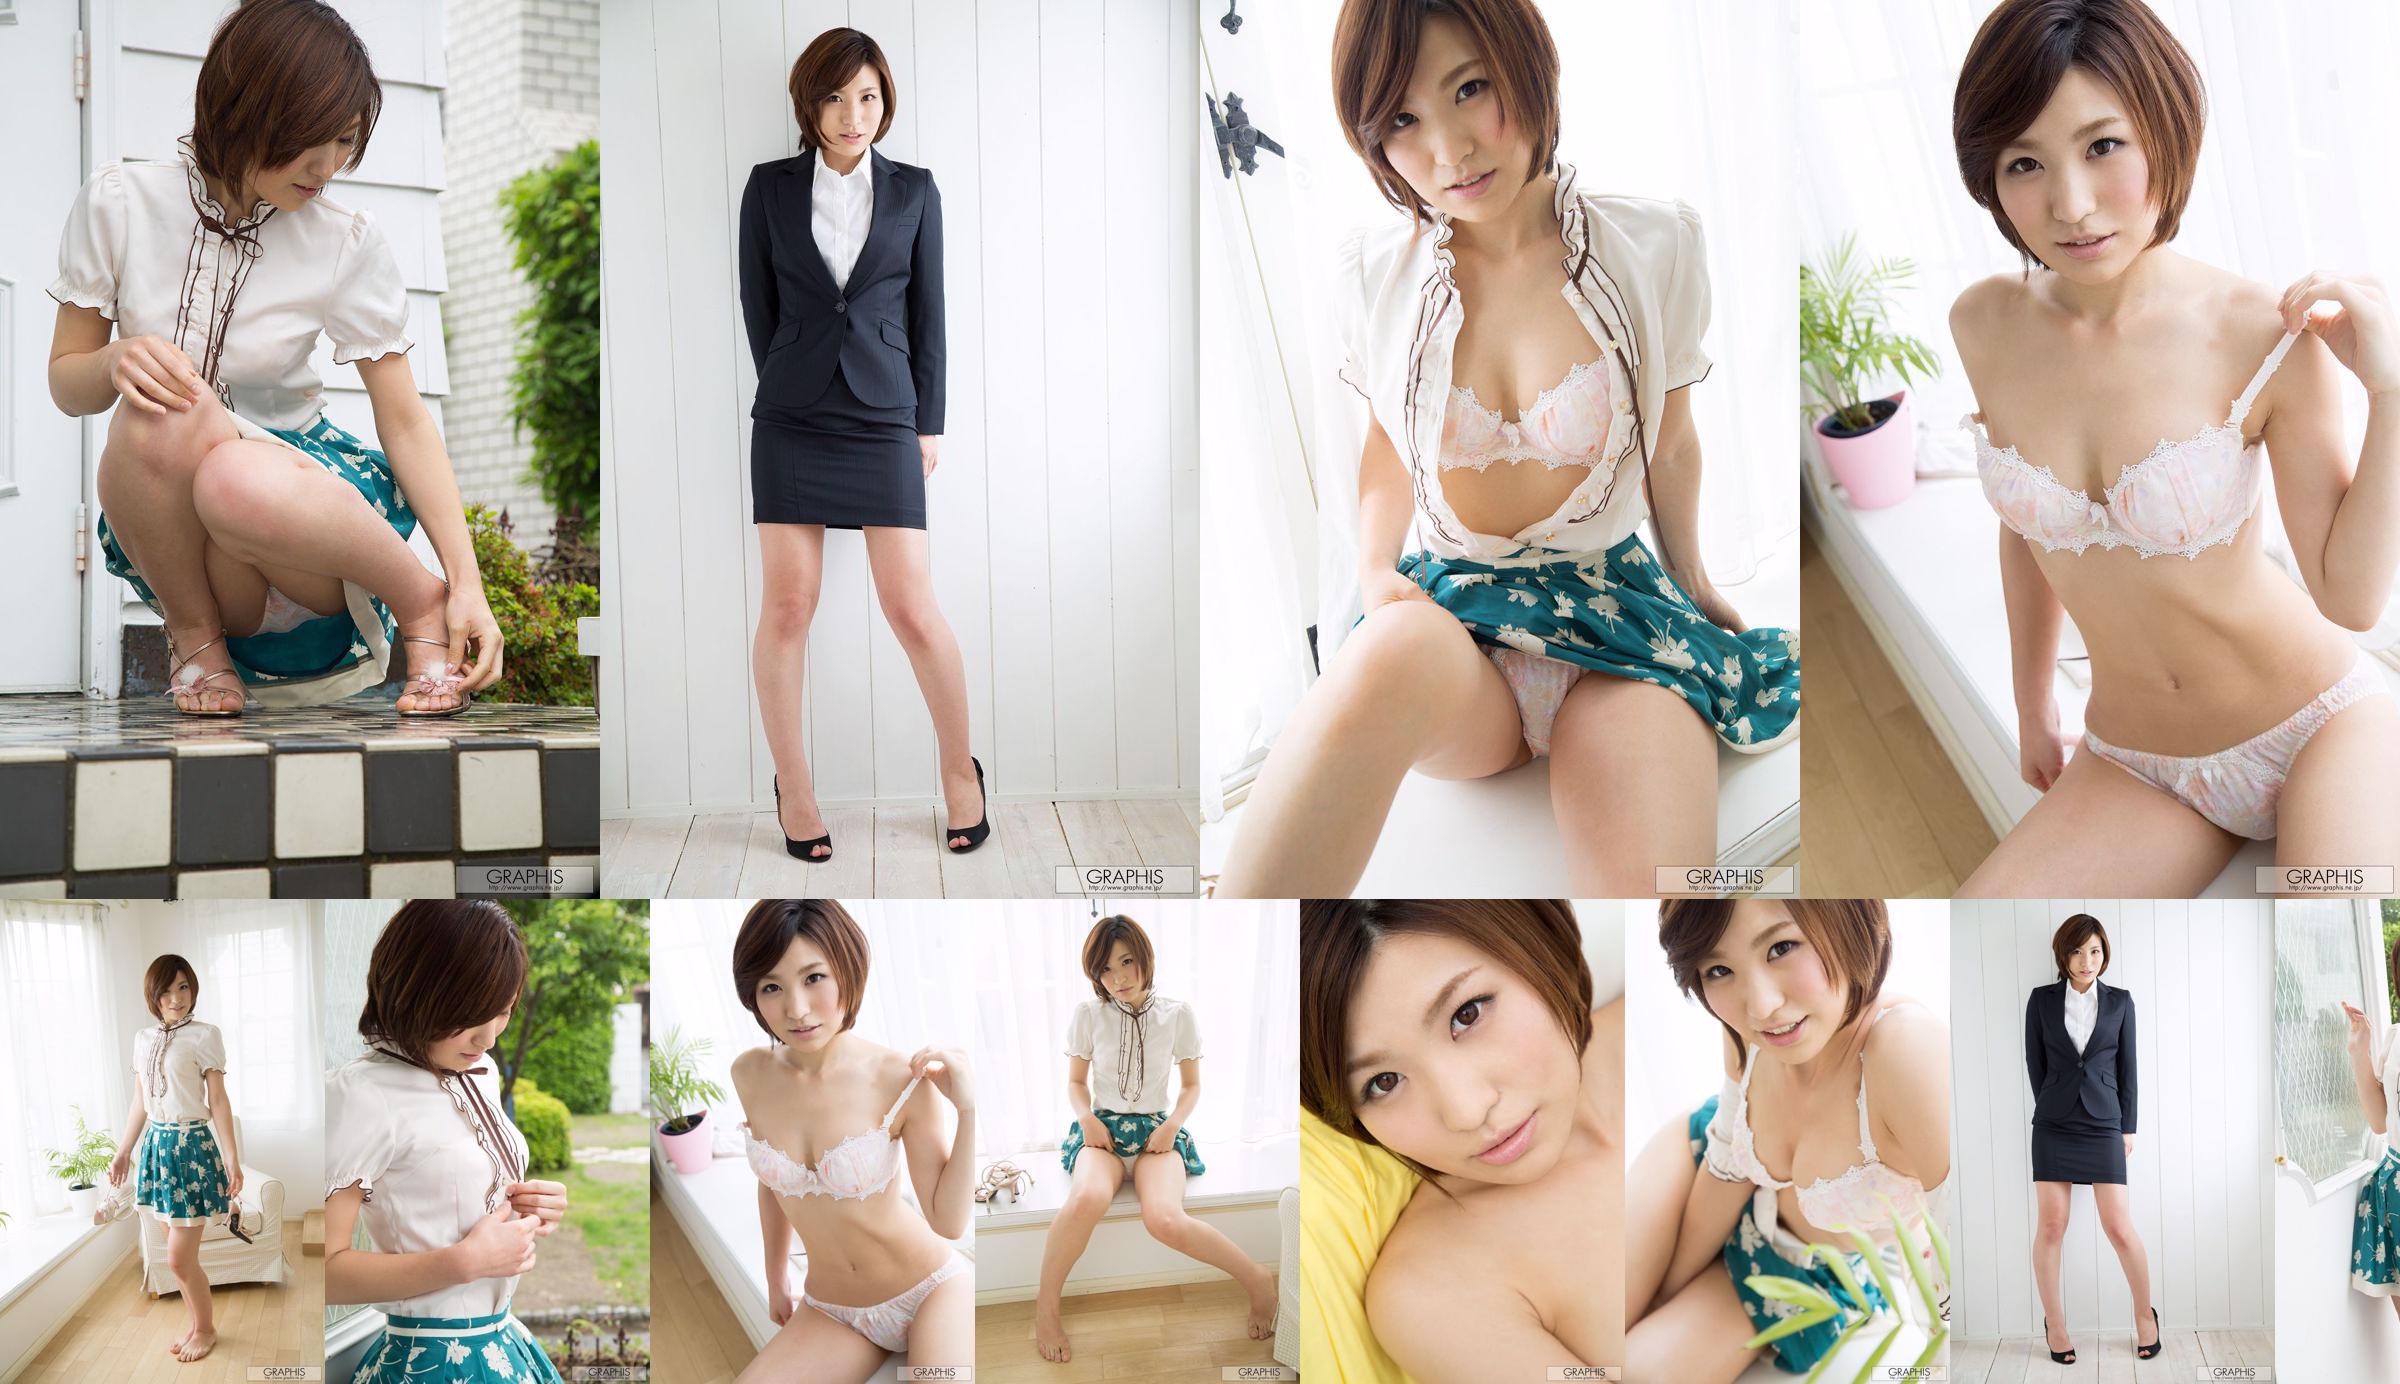 Minami Natsuki / Minami Natsuki [Graphis] Primer fotograbado, primer despegue, hija No.26399c Página 1